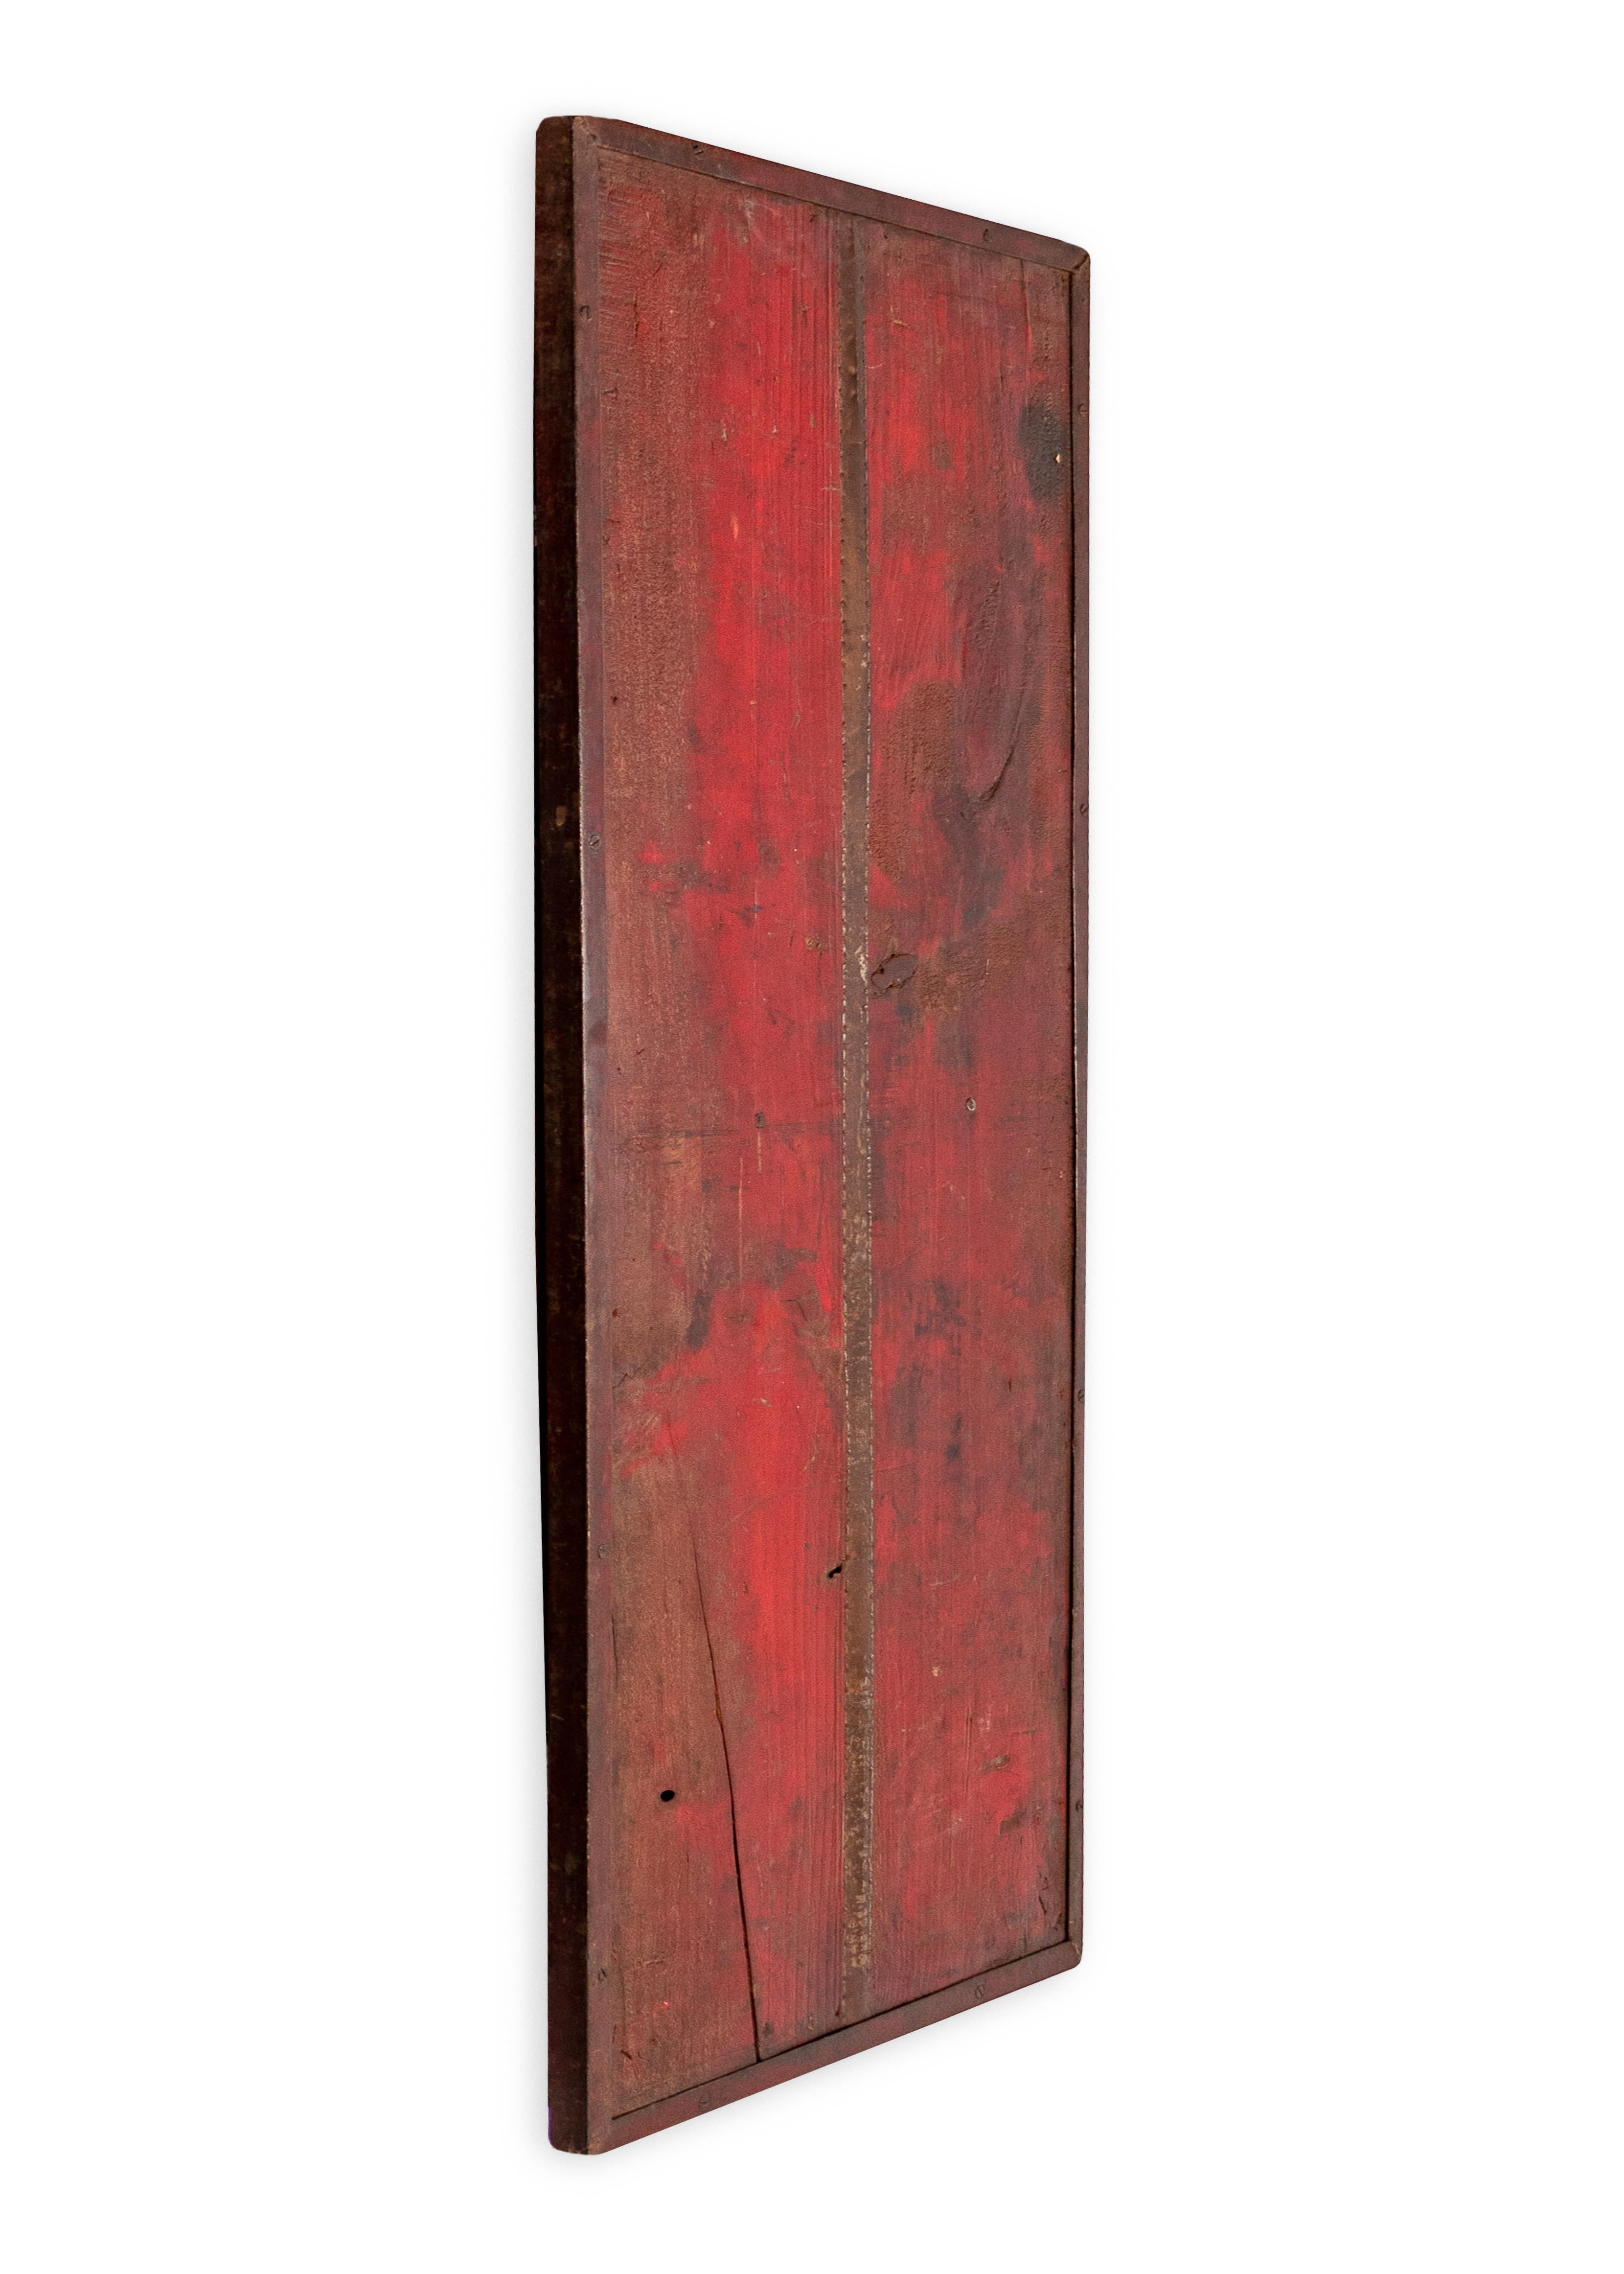 Mehrfarbiges rotes Holzpaneel mit wiederverwendeten Metallelementen. In meiner organischen, zeitgenössischen, Vintage- und Mid-Century-Modern-Ästhetik.

Dieses Stück ist Teil von Brendan Bass' einzigartiger Kollektion Le Monde. Die Kollektion Le